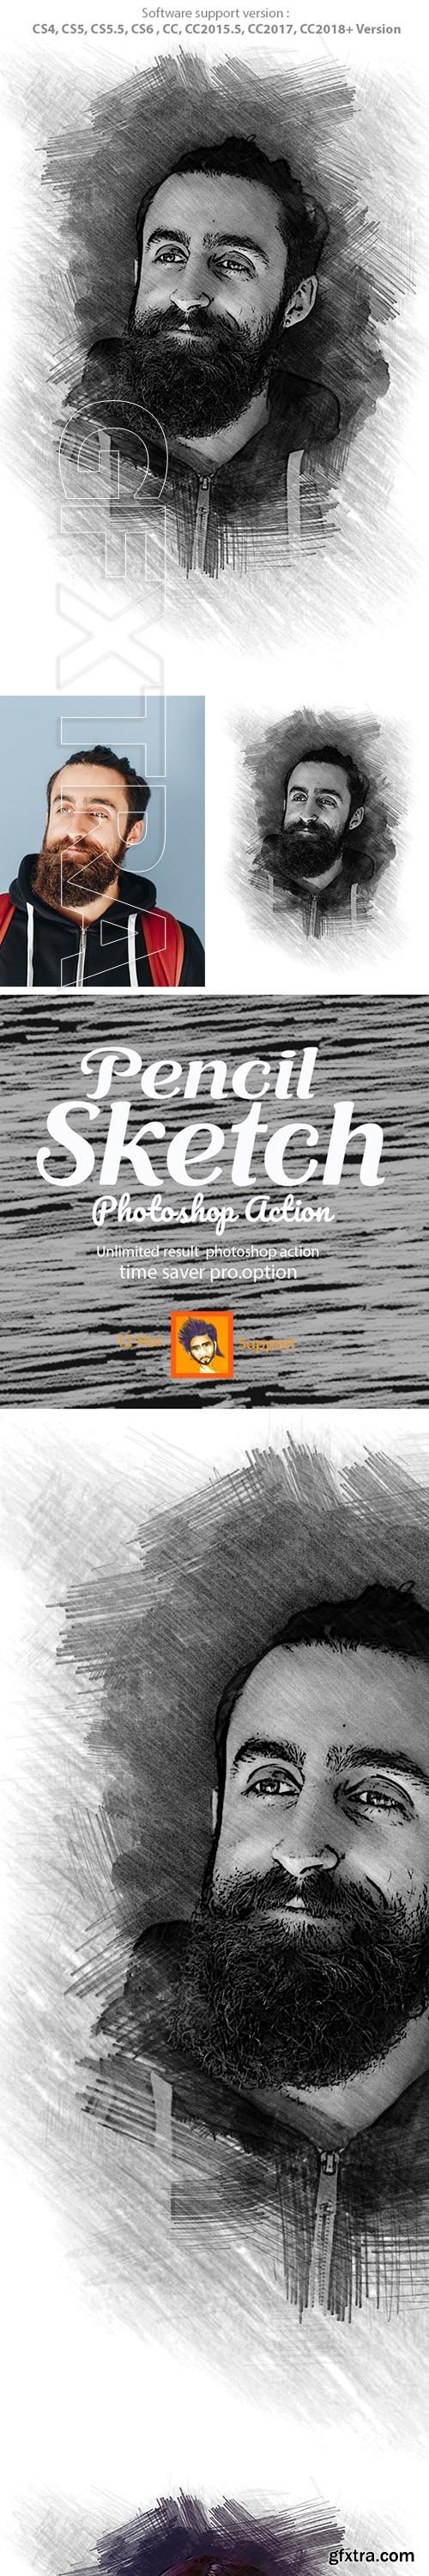 GraphicRiver - Pencil Sketch Photoshop Action 22896928